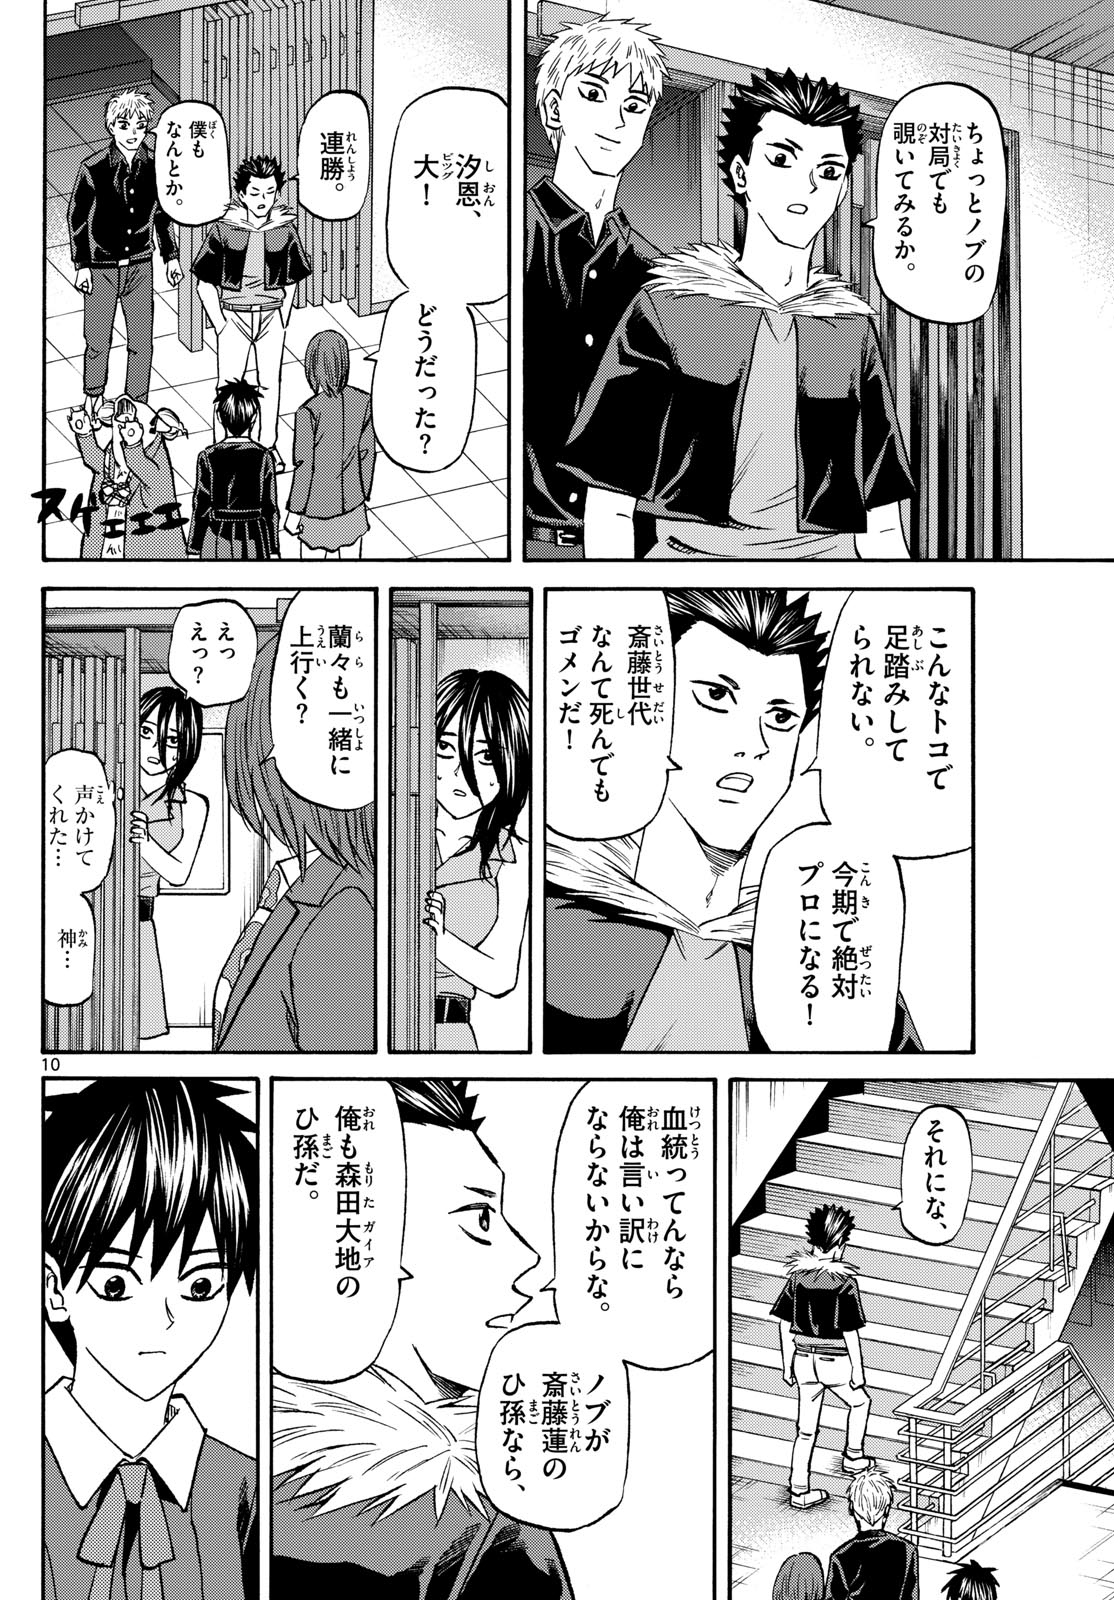 Tatsu to Ichigo - Chapter 187 - Page 10